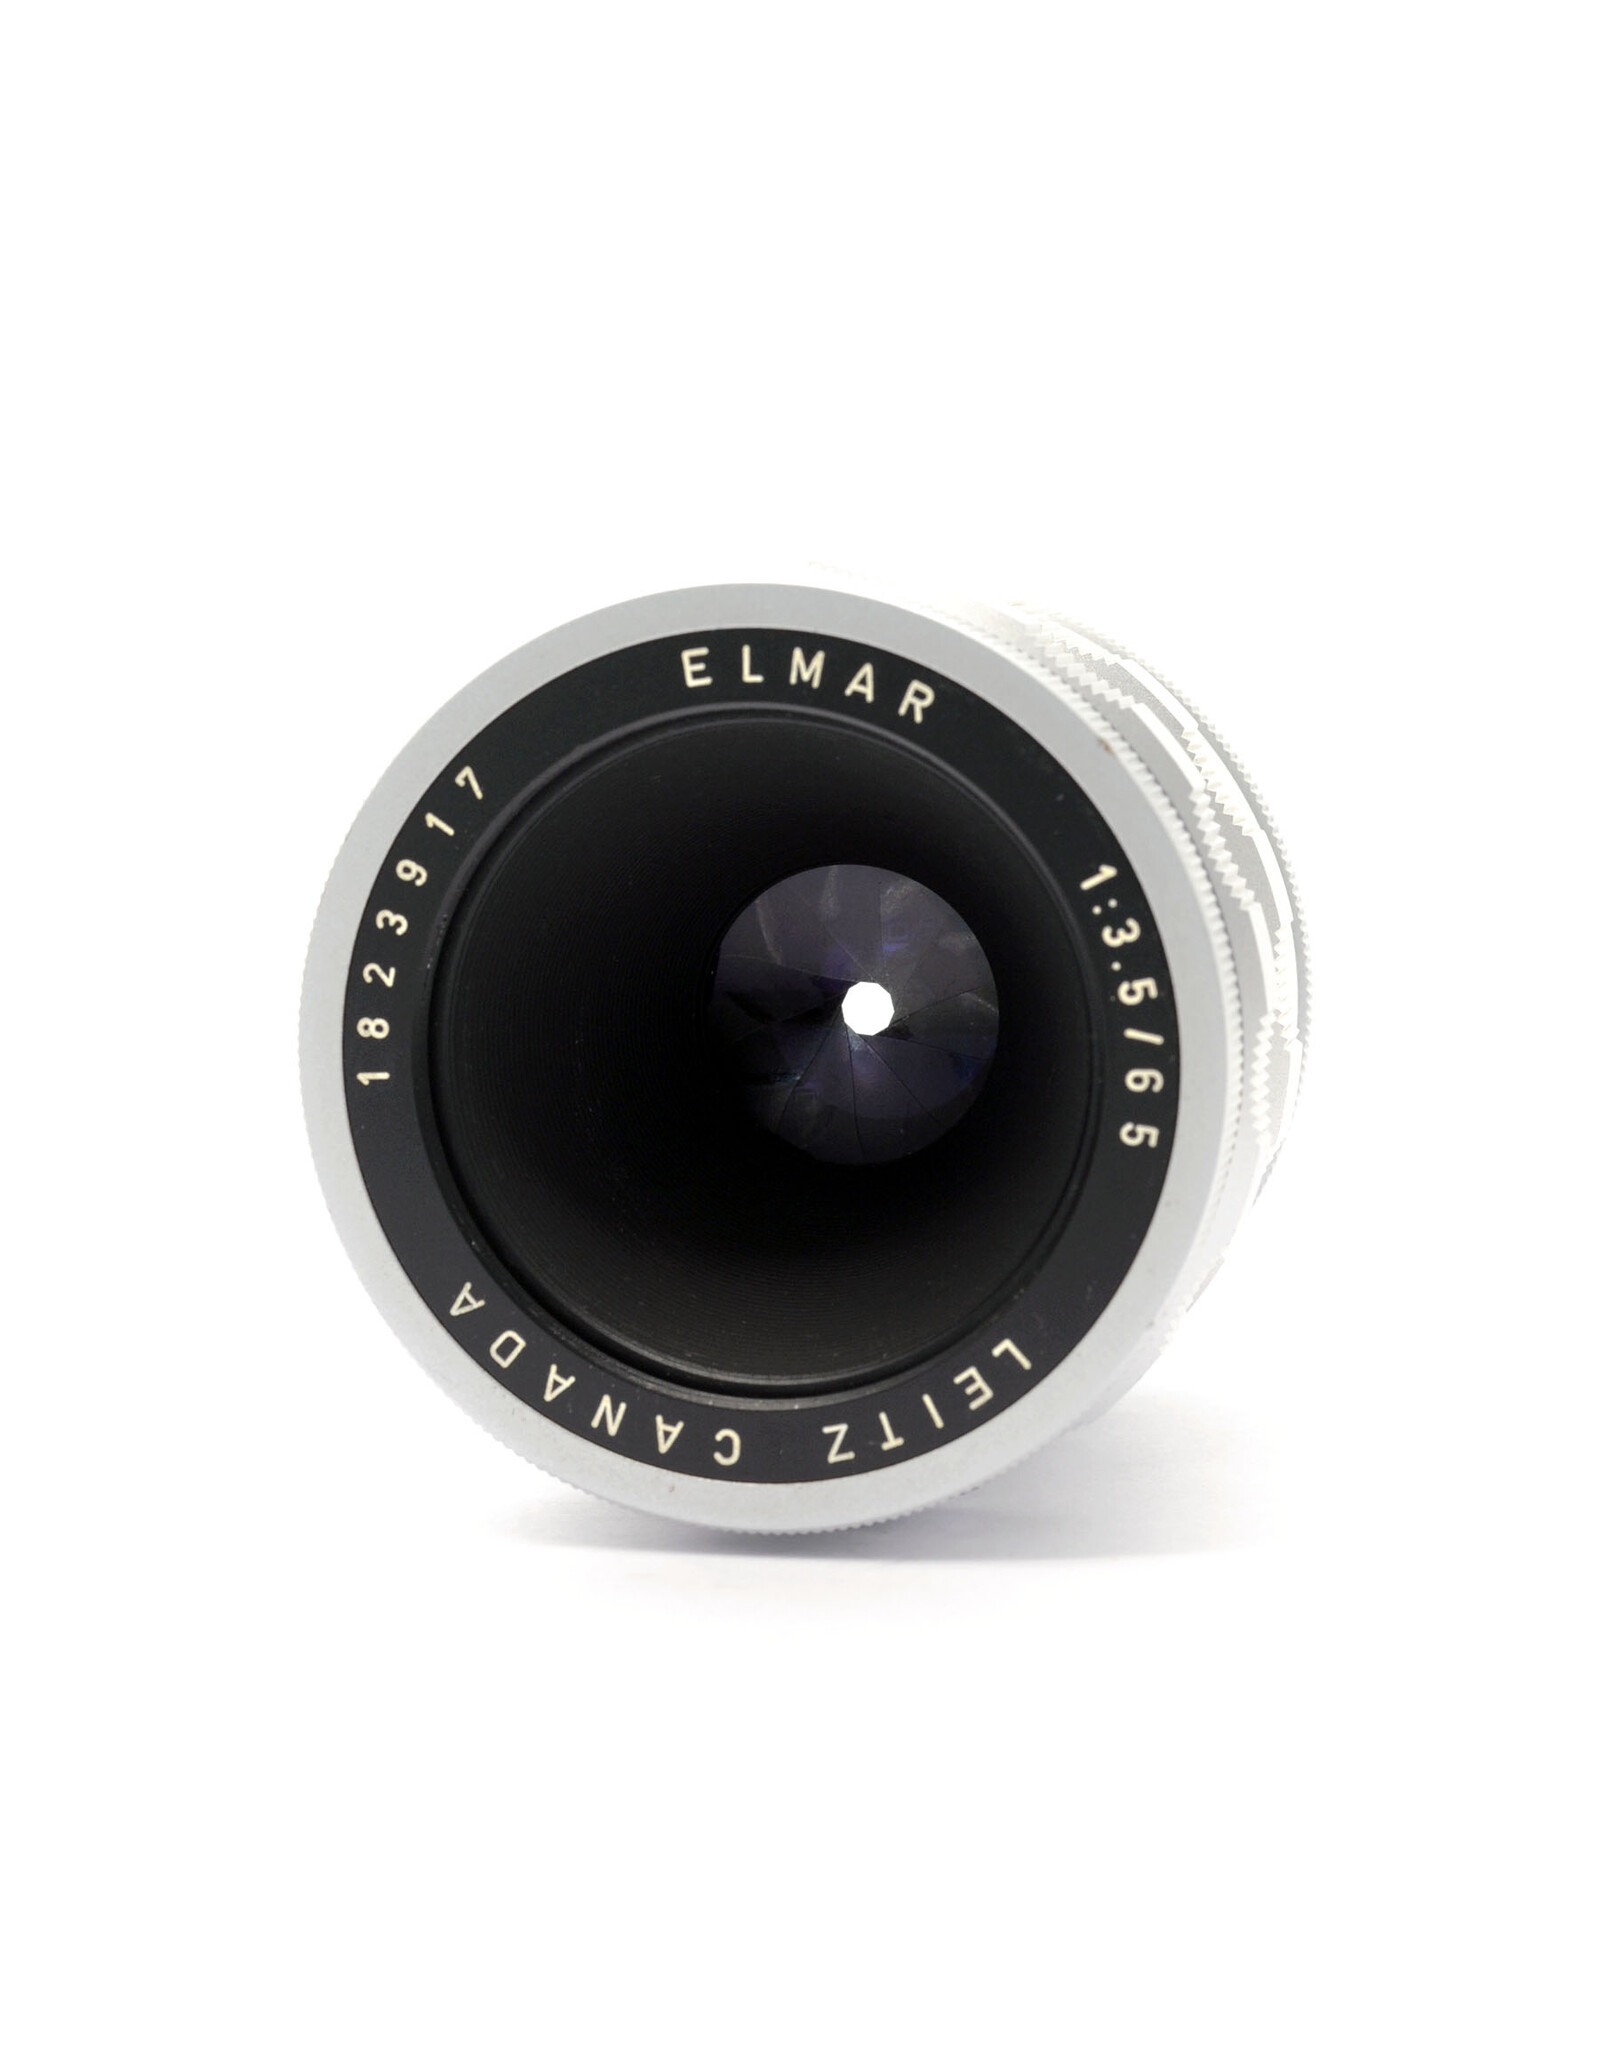 LEITZ CANADA ビゾフレックス ELMAR 65mm f3.5 - フィルムカメラ